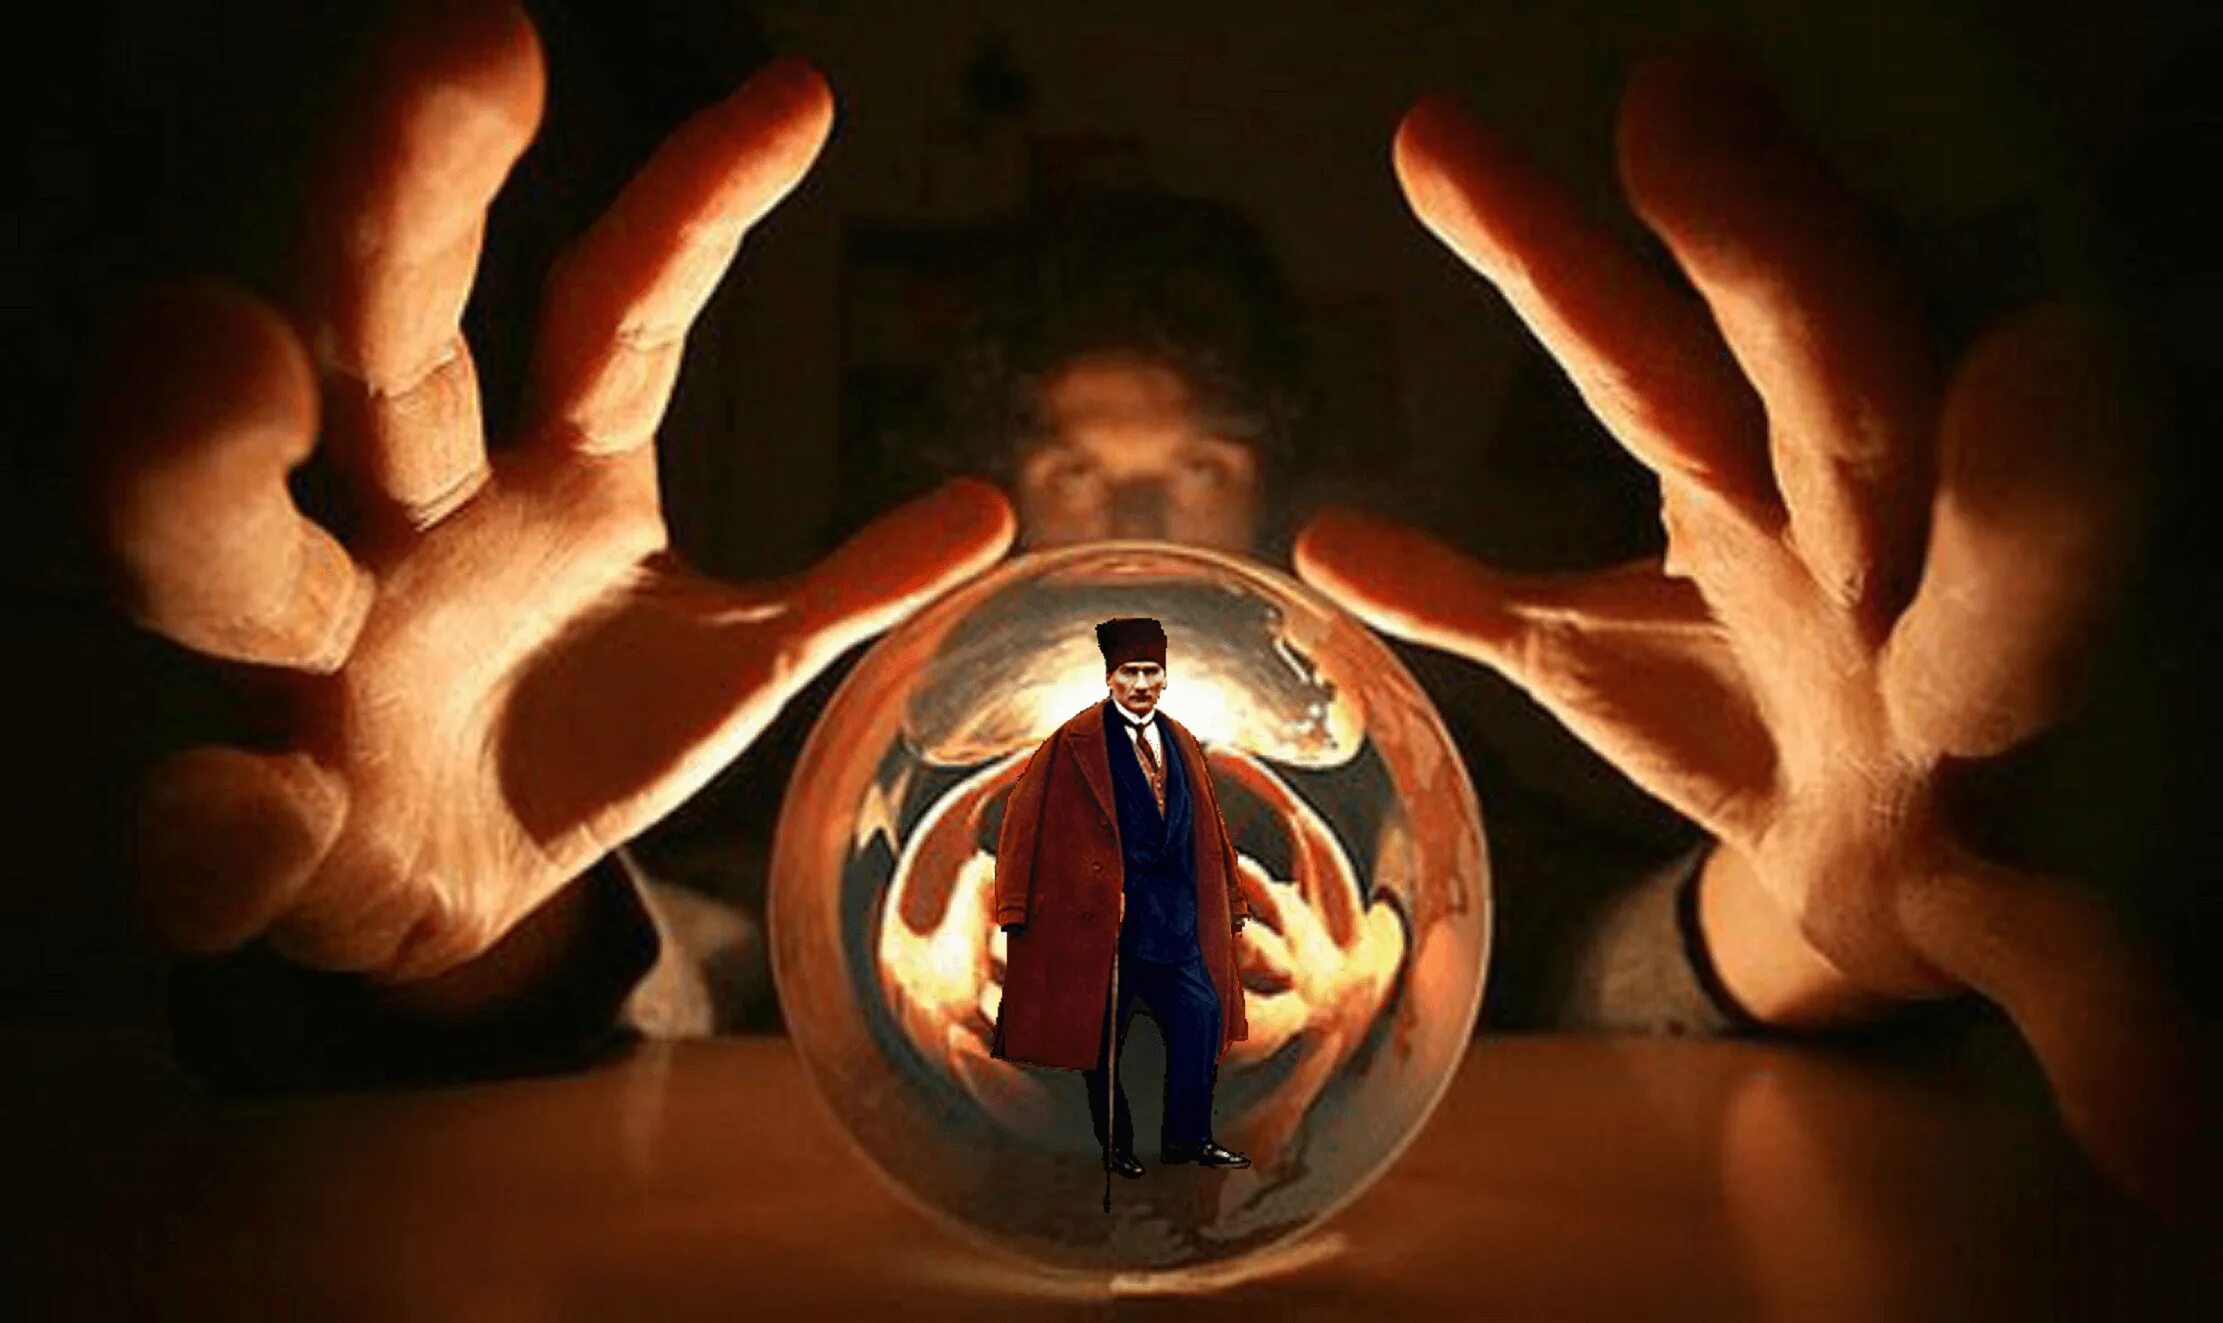 Crystal ball результаты. Магический шар в руках. Хрустальный шар в руках. Шар экстрасенса. Магический шар экстрасенса.